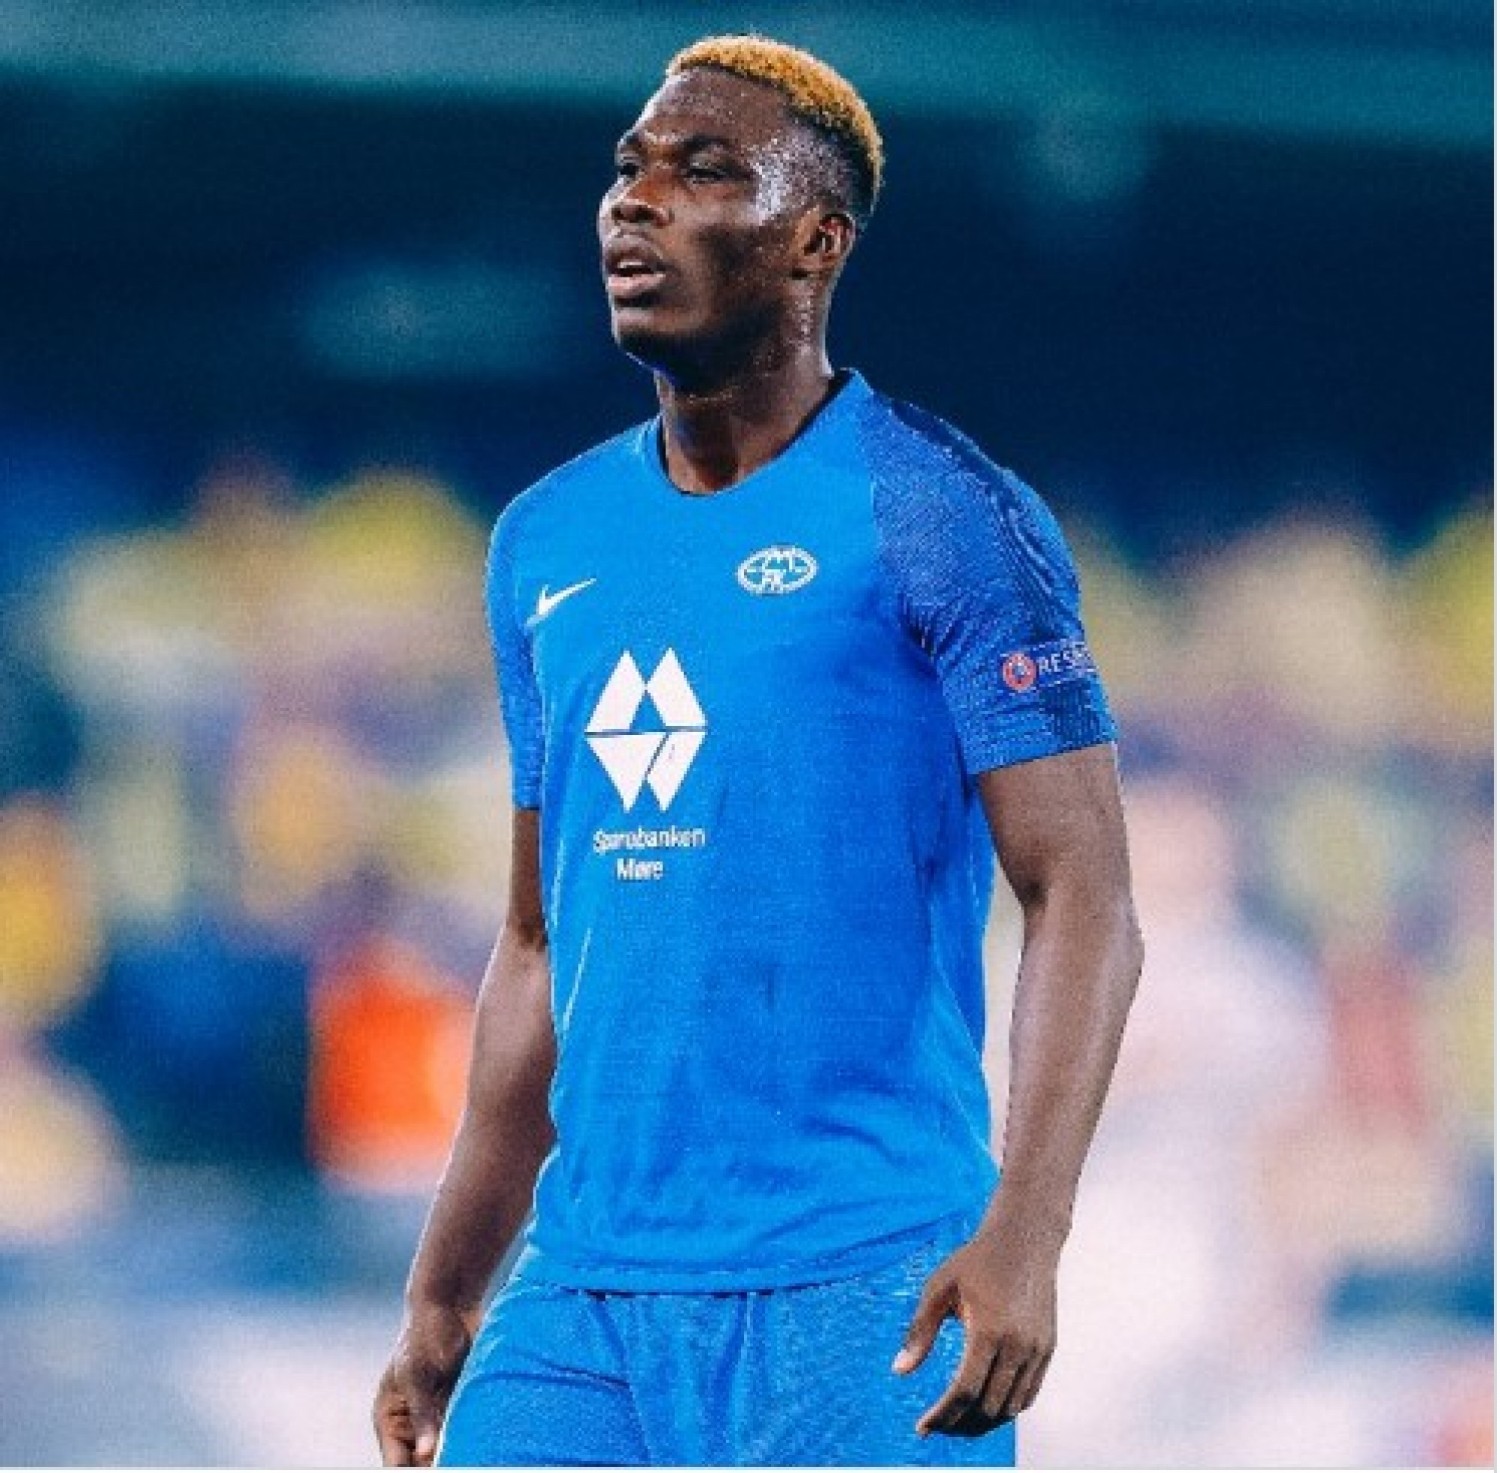 Côte d'Ivoire : Pré-accord  entre Chelsea et  Molde FK pour le transfert de la nouvelle perle  David Datro Fofana, sa valeur estimée à près de 08 milliards FCFA